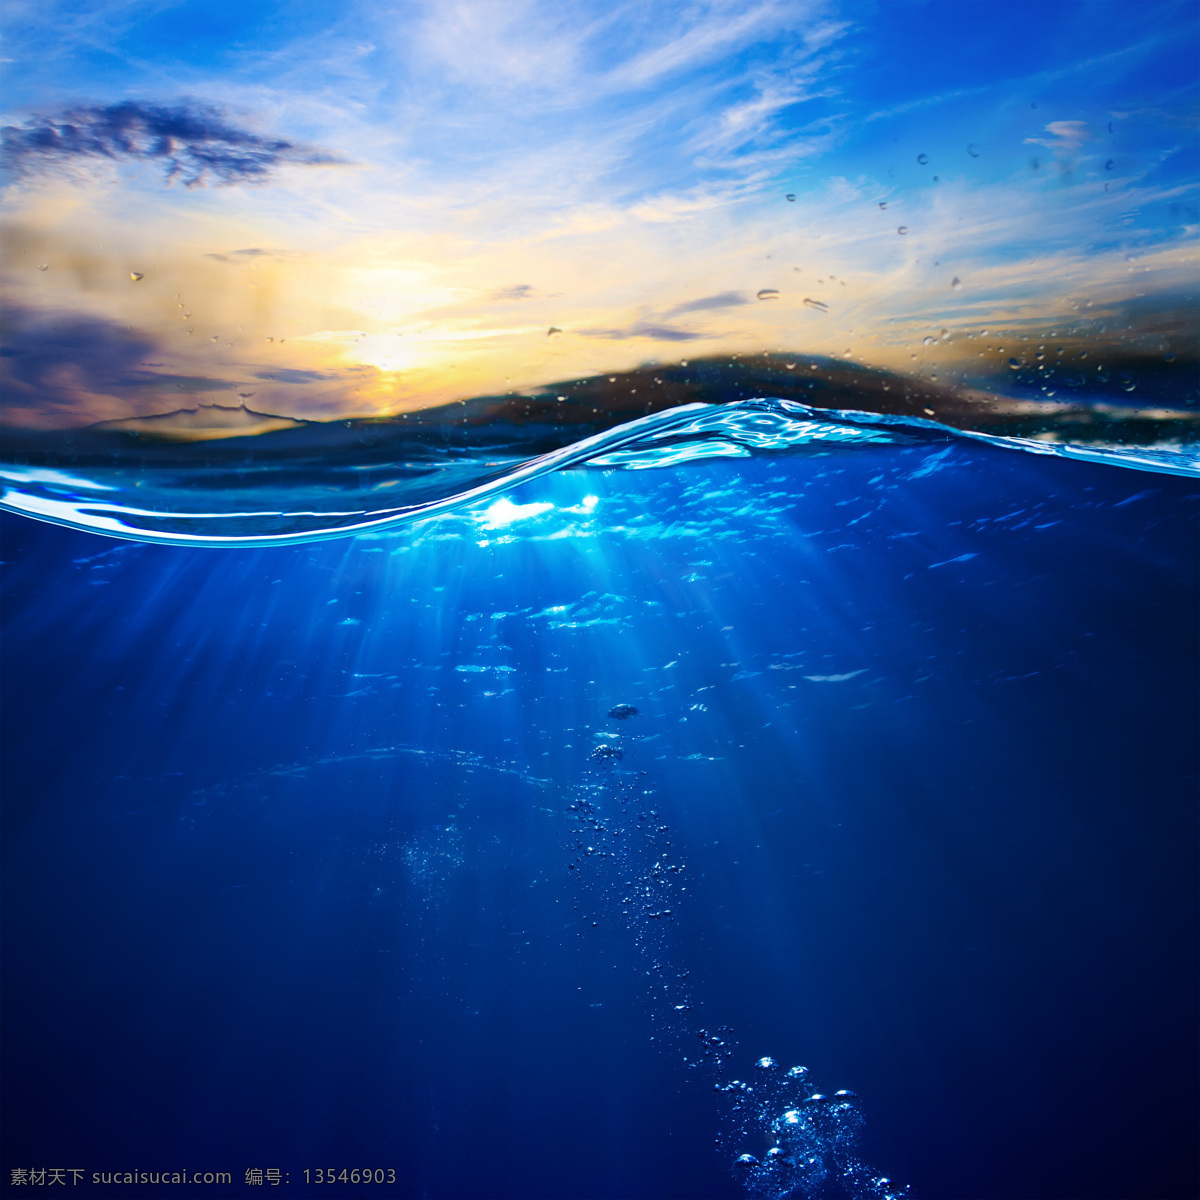 海洋 海水 海底世界 水纹背景 蓝色海洋 大海风景 海面风景 美丽风景 大海图片 风景图片